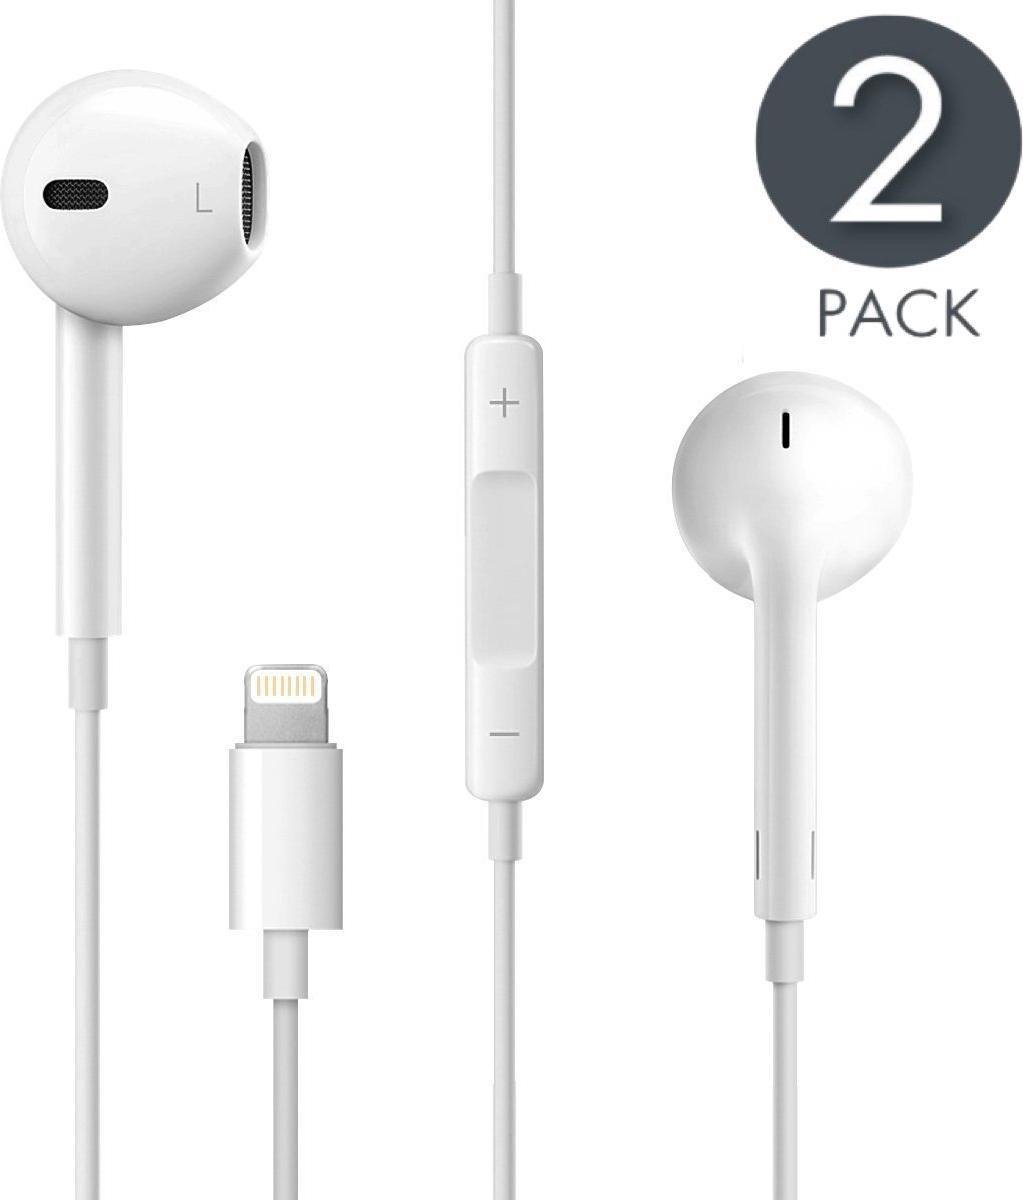 2 Stuks Apple iPhone 7 7 Plus In-Ear Headset Koptelefoon Oordopjes Oortjes met... | bol.com